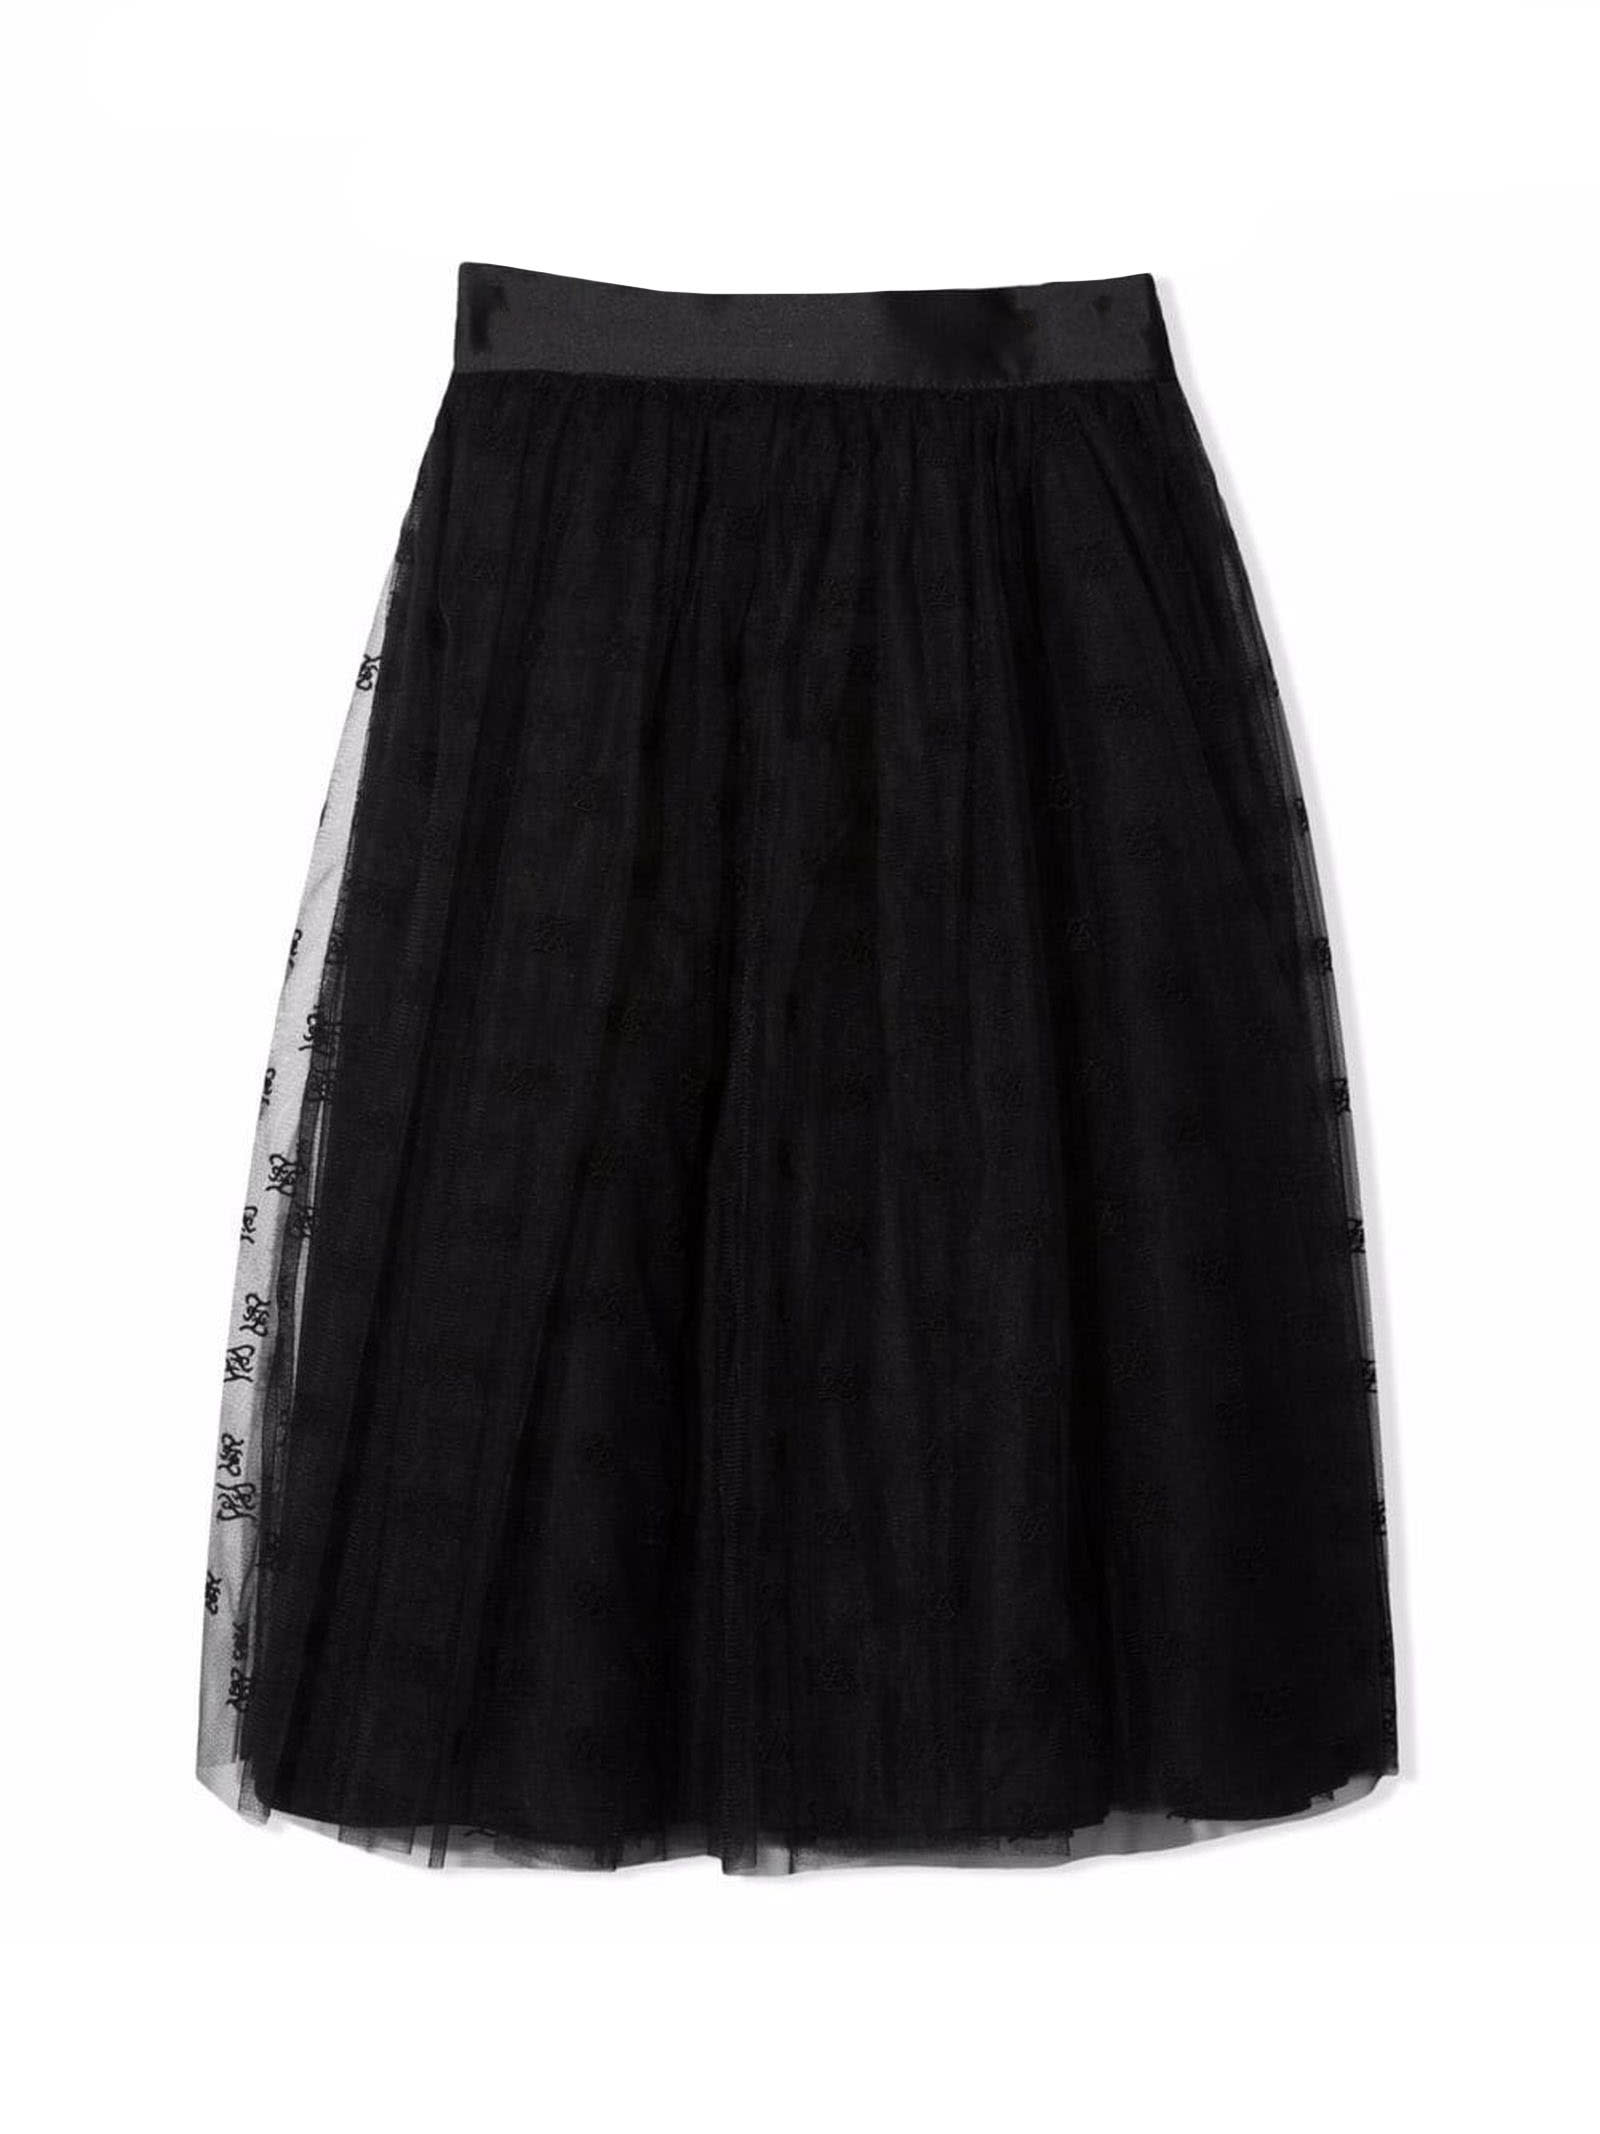 Fendi Black Cotton Blend Midi Tutu Skirt